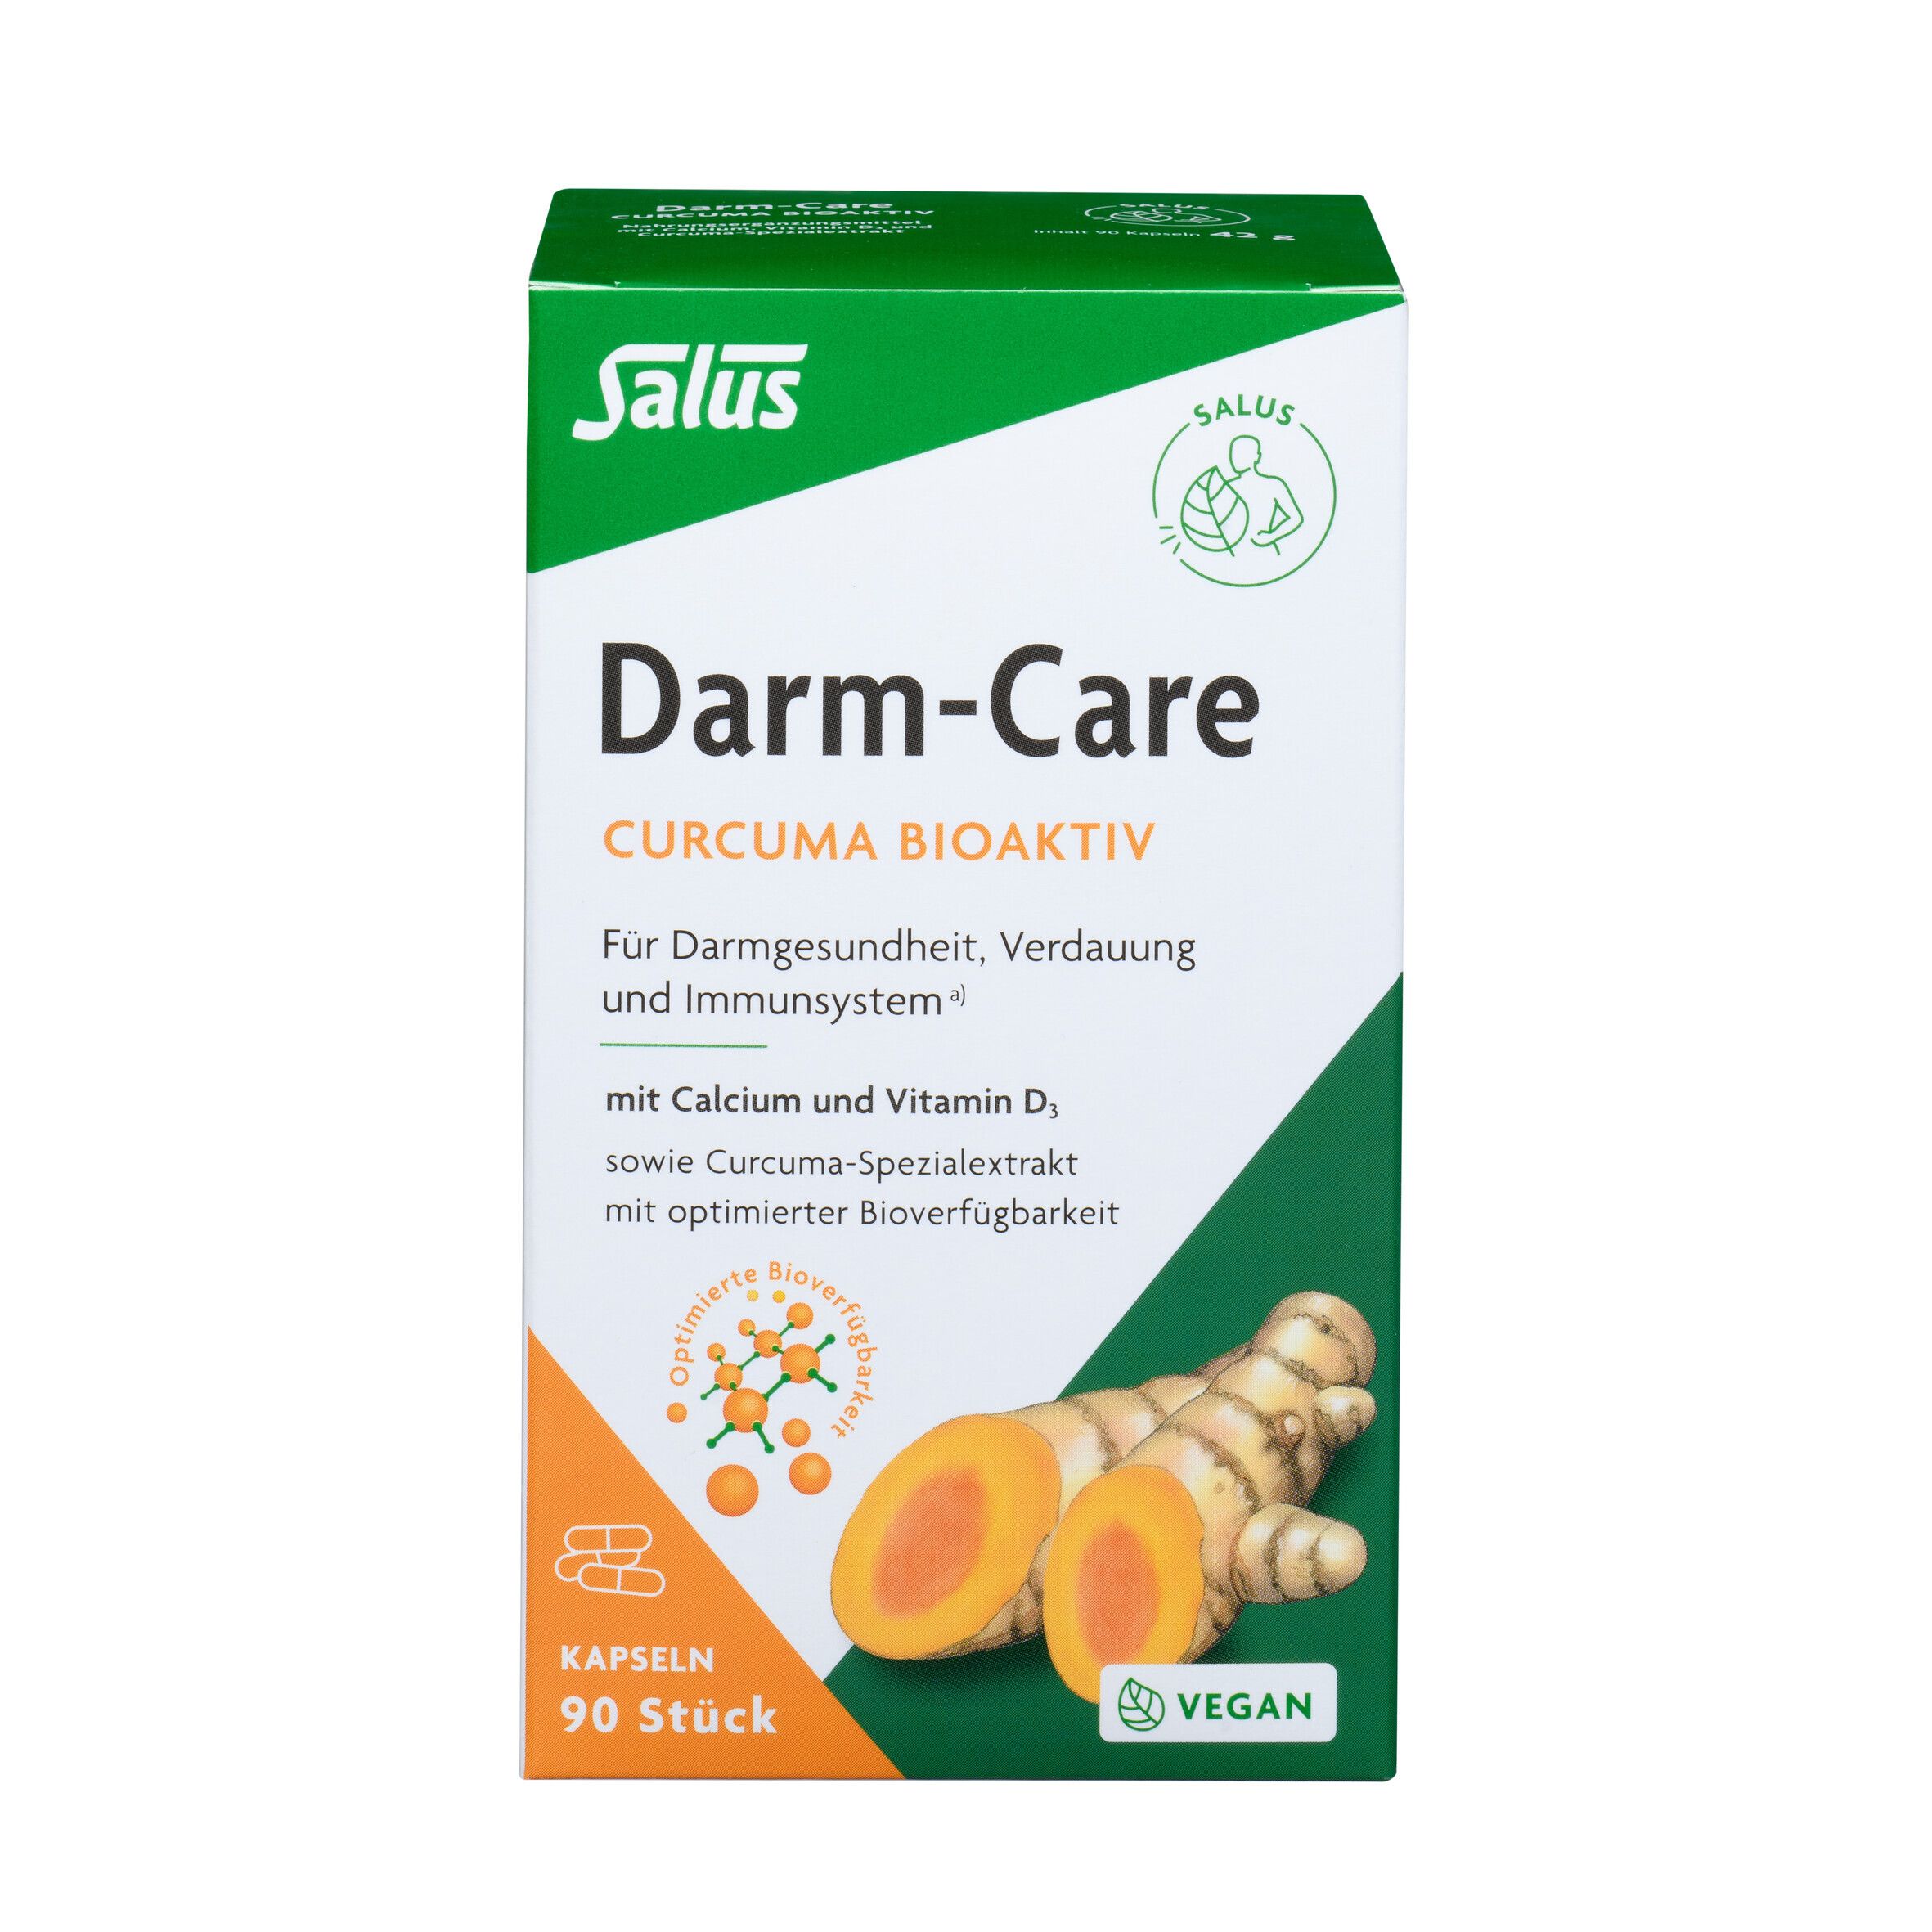 Salus® Darm-Care Curcuma Bioaktiv